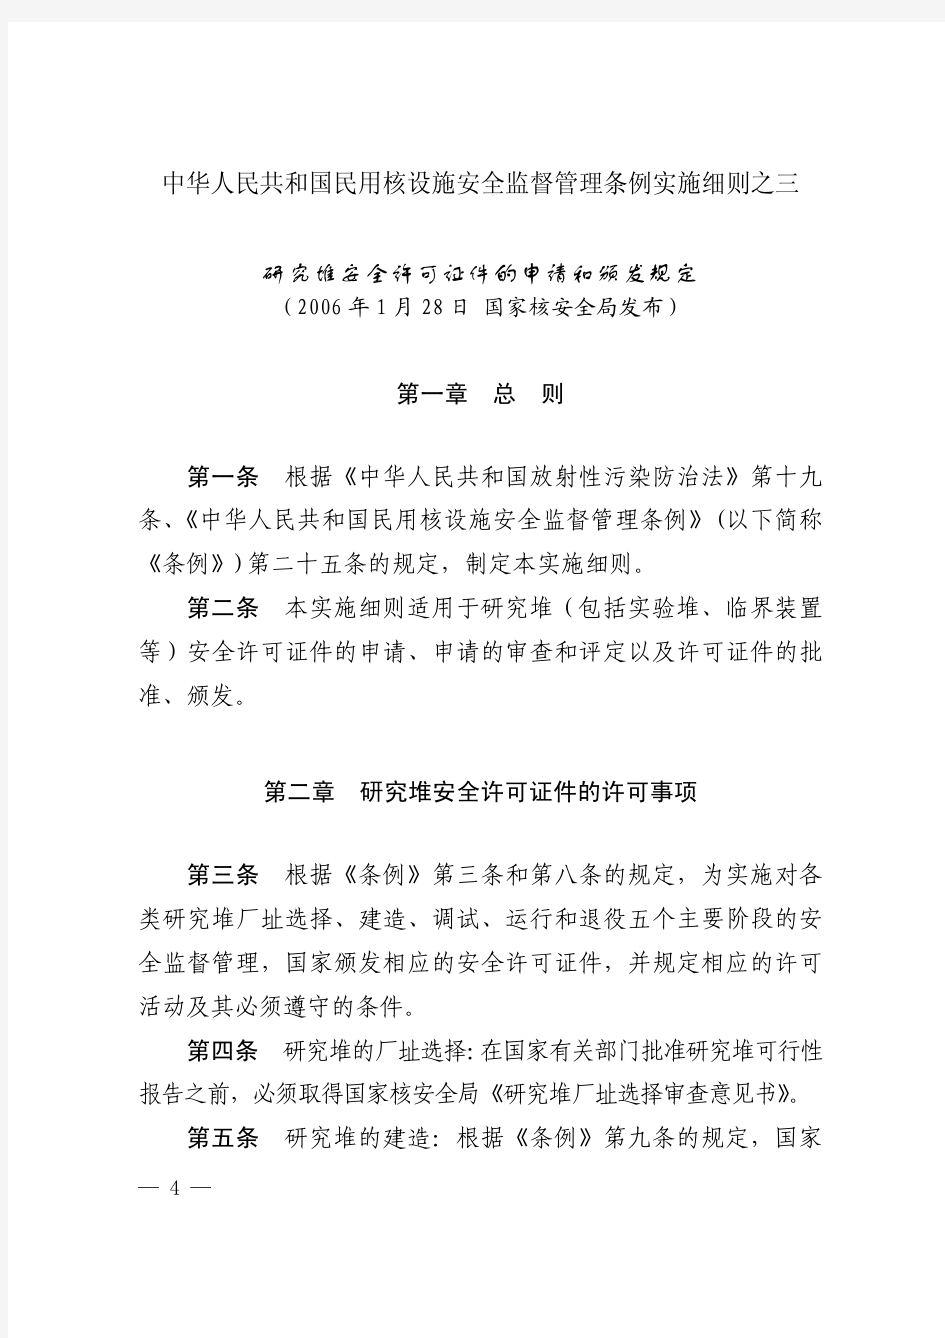 中华人民共和国民用核设施安全监督管理条例实施细则